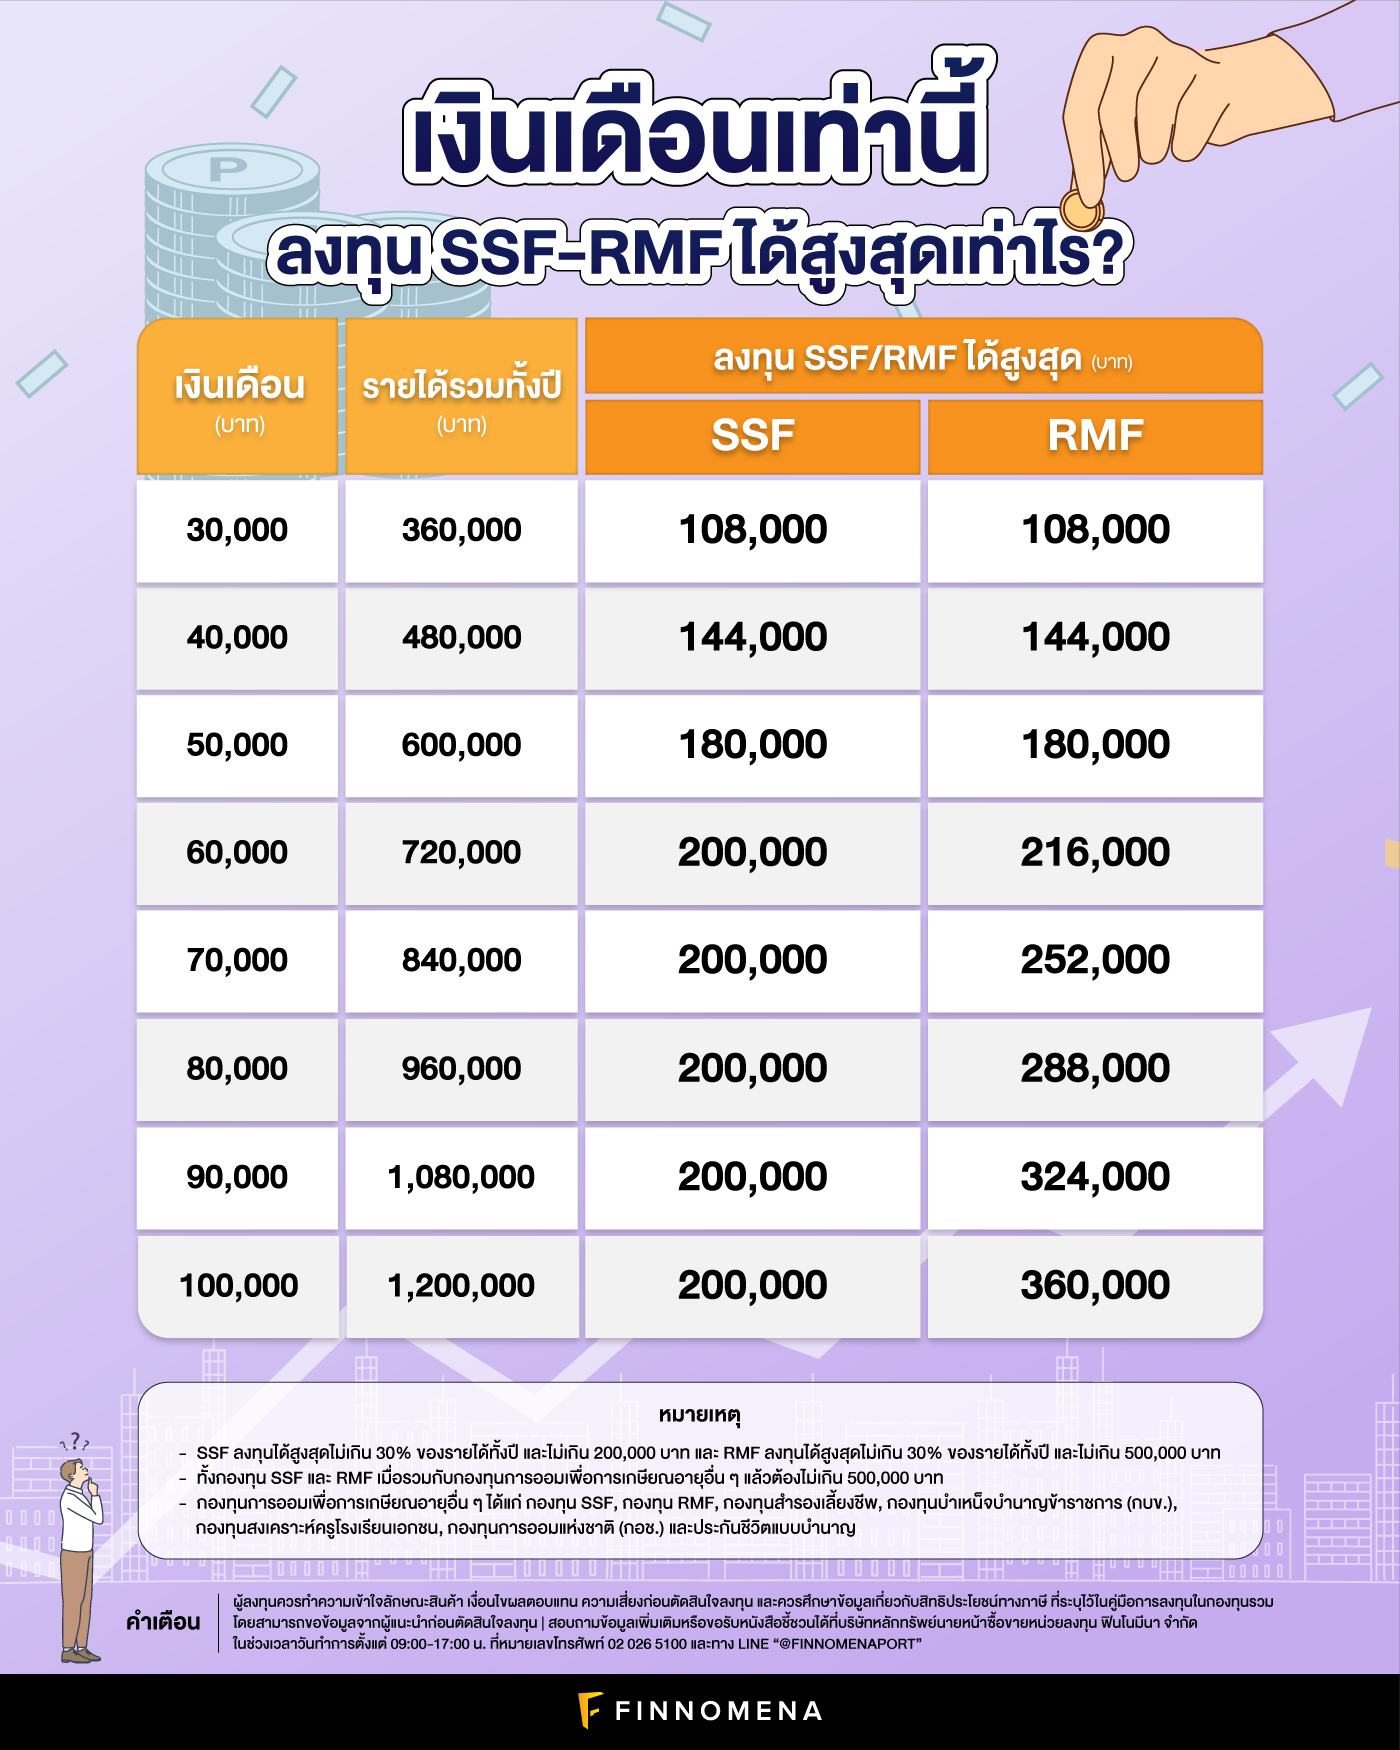 เงินเดือนเท่านี้ ลงทุน SSF-RMF ได้สูงสุดเท่าไร?